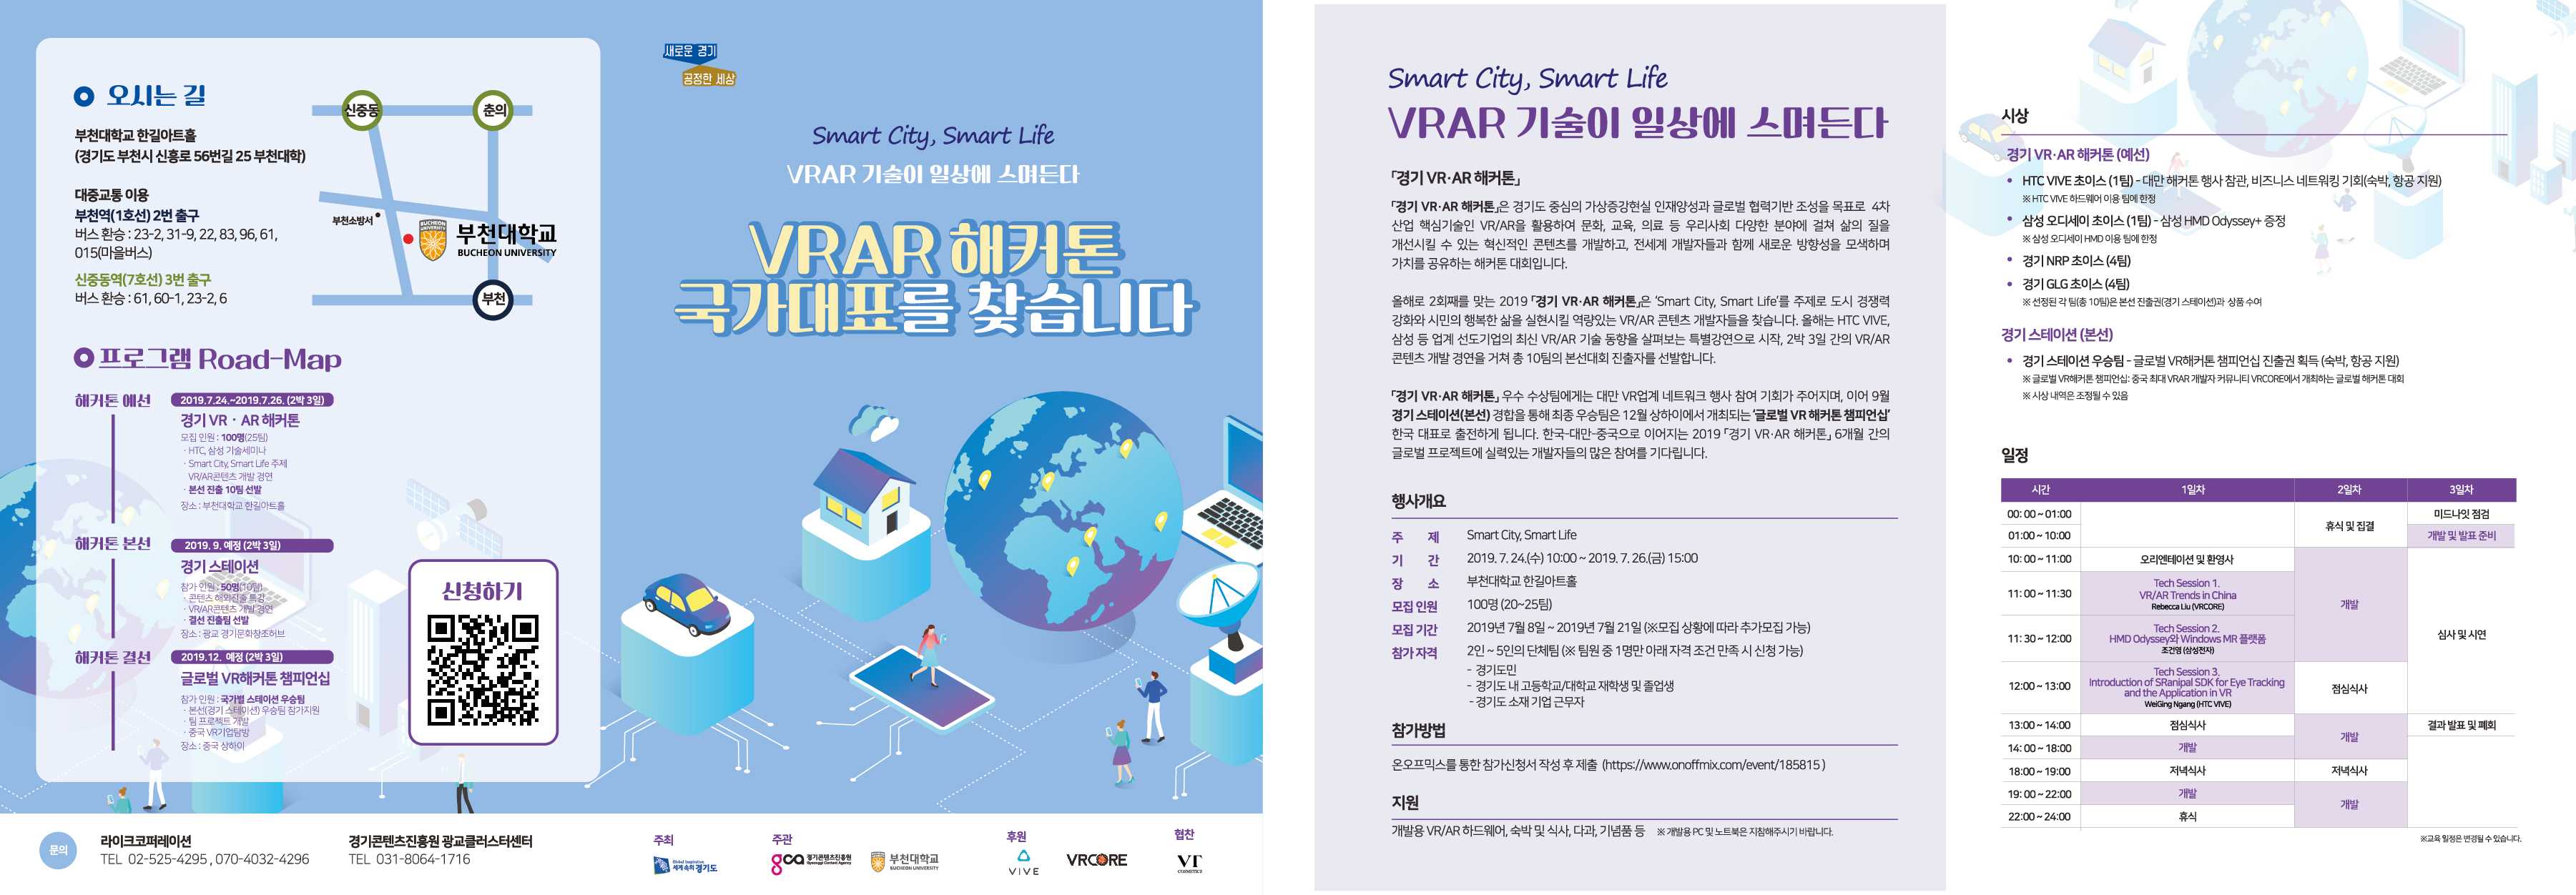 부천대학교, ‘2019 경기 VR/AR 해커톤’ 경진대회 개최